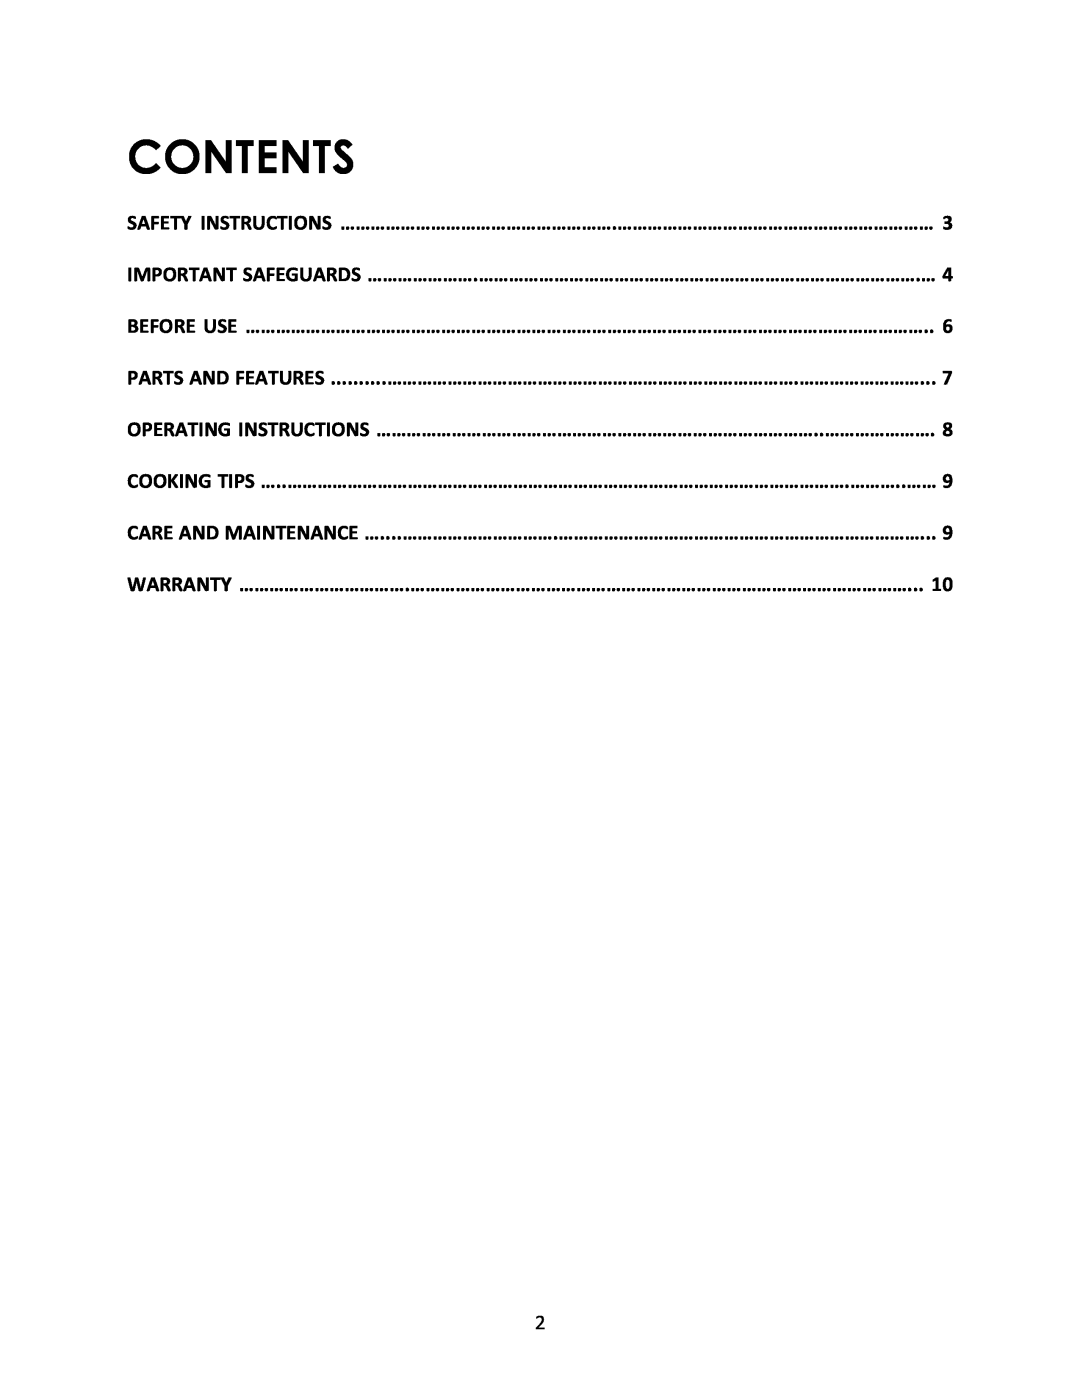 Magic Chef MCSG19B1 instruction manual Contents 